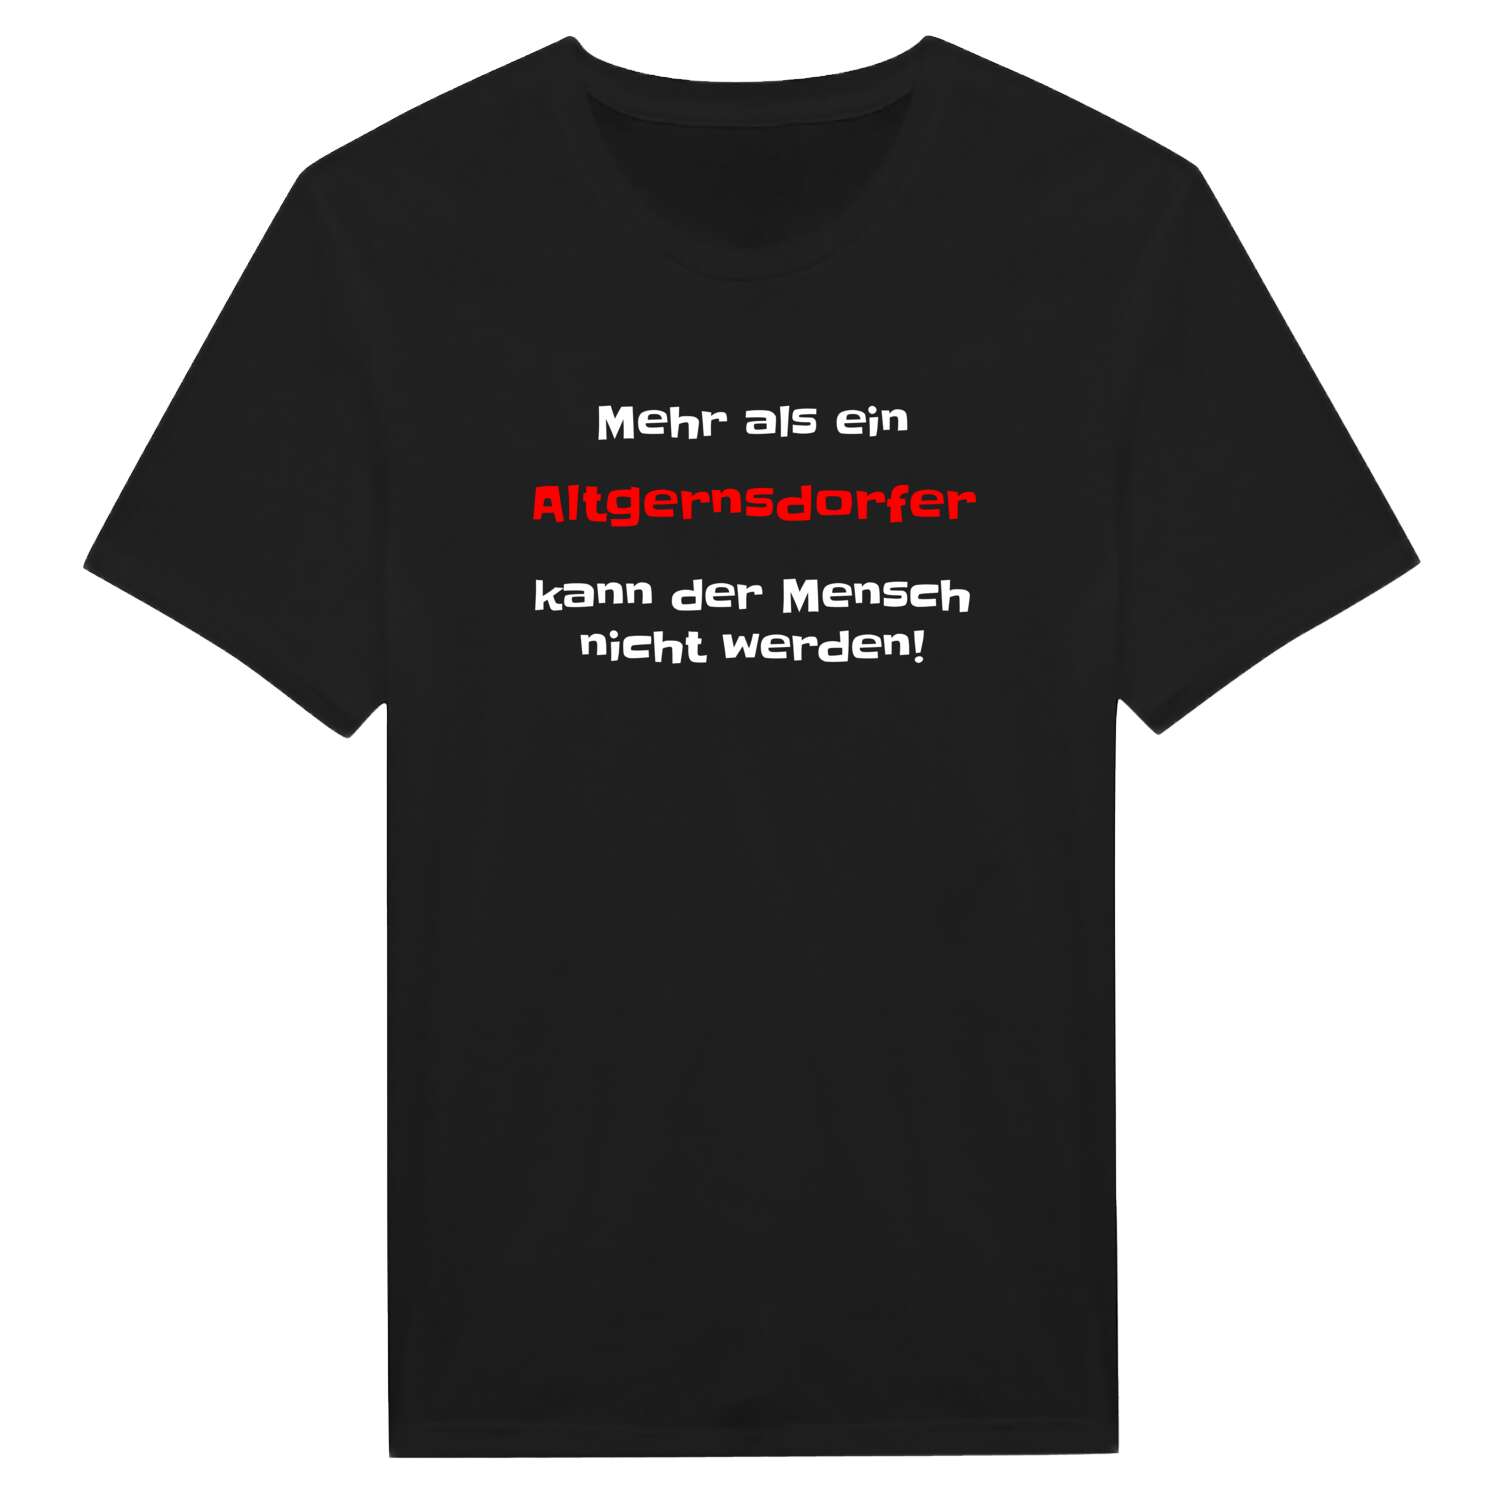 Altgernsdorf T-Shirt »Mehr als ein«